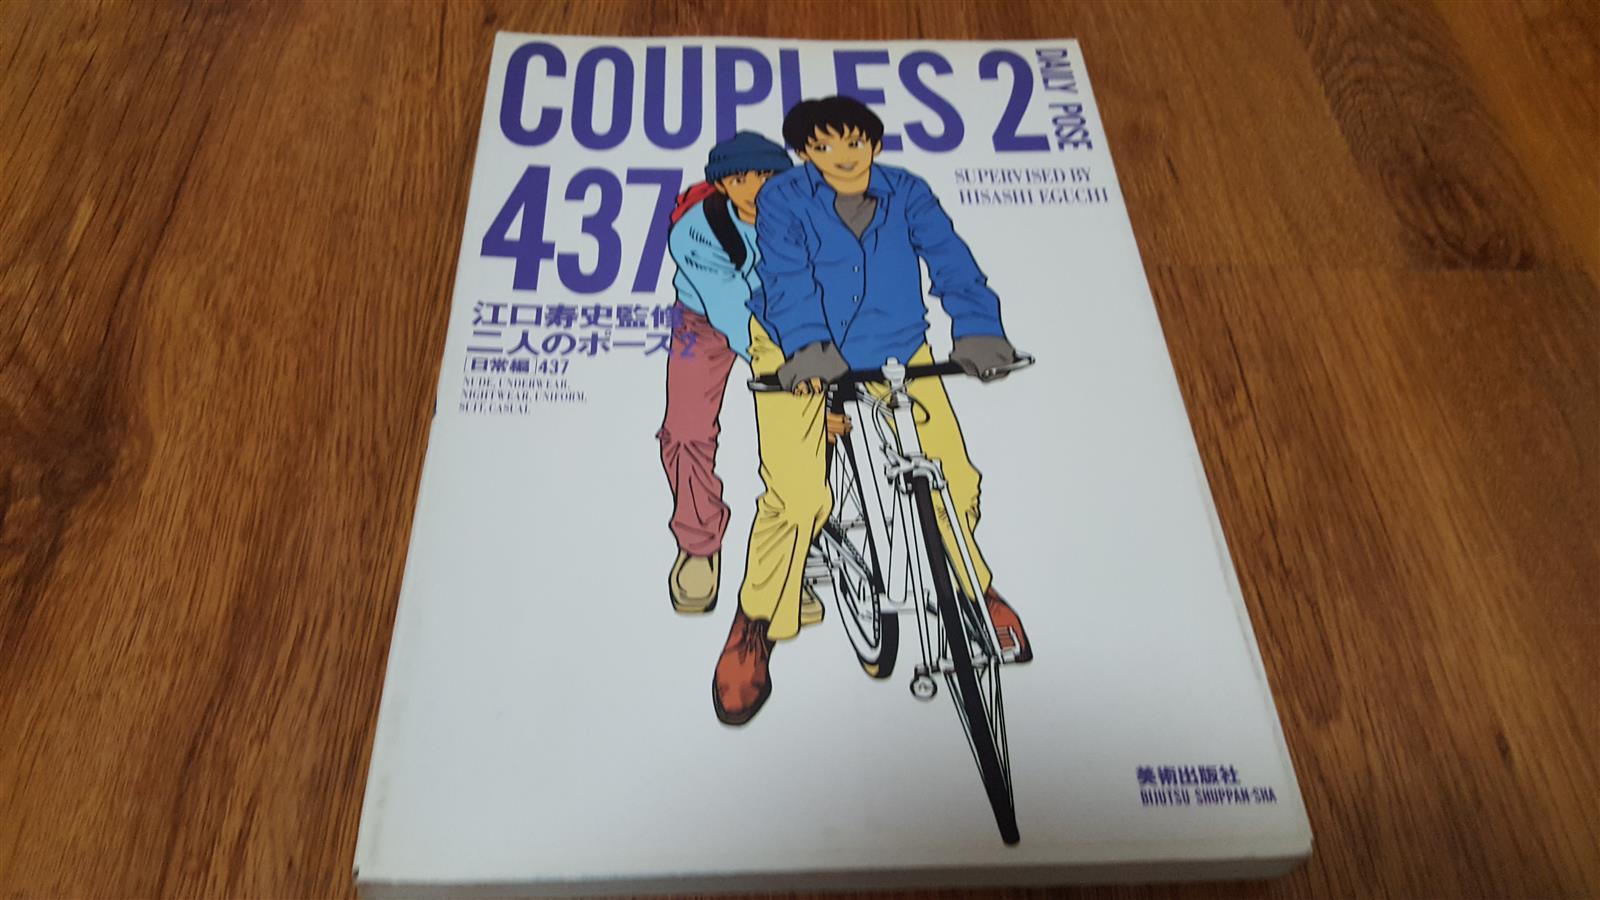 [중고] COUPLES2 DAILY POSE437 (19세이상)